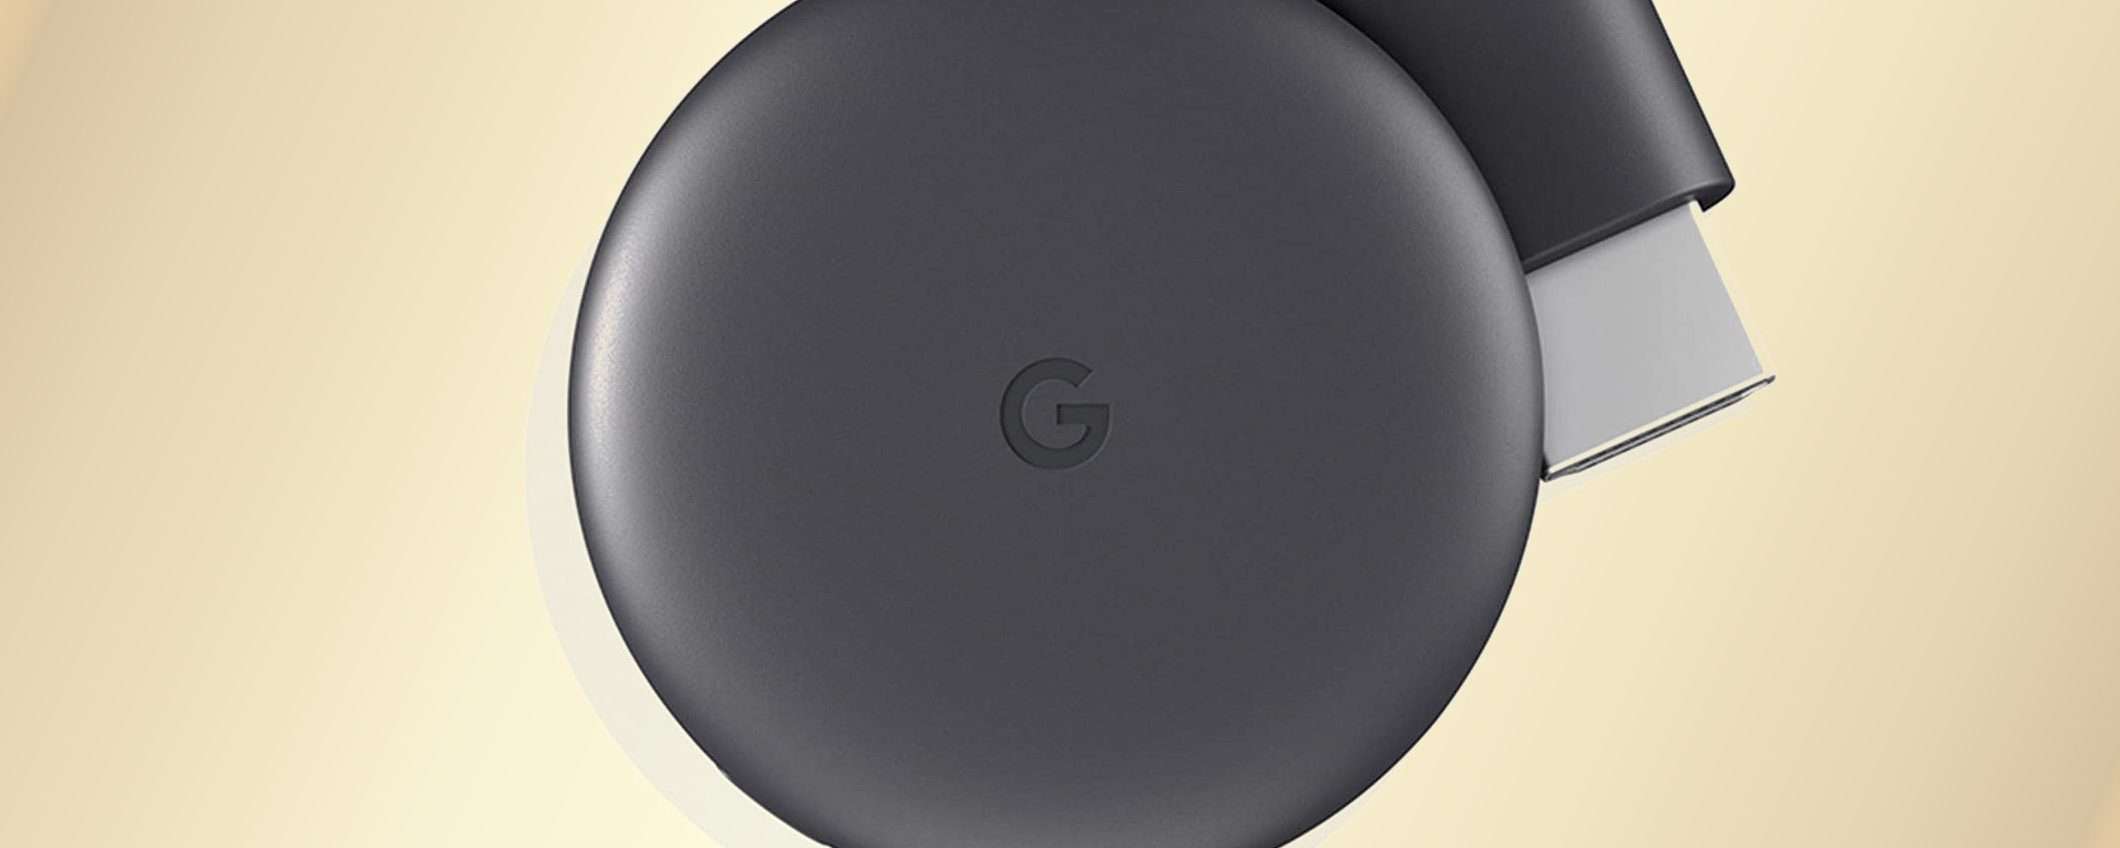 Anche Google Chromecast cede al Prime Day: -42%